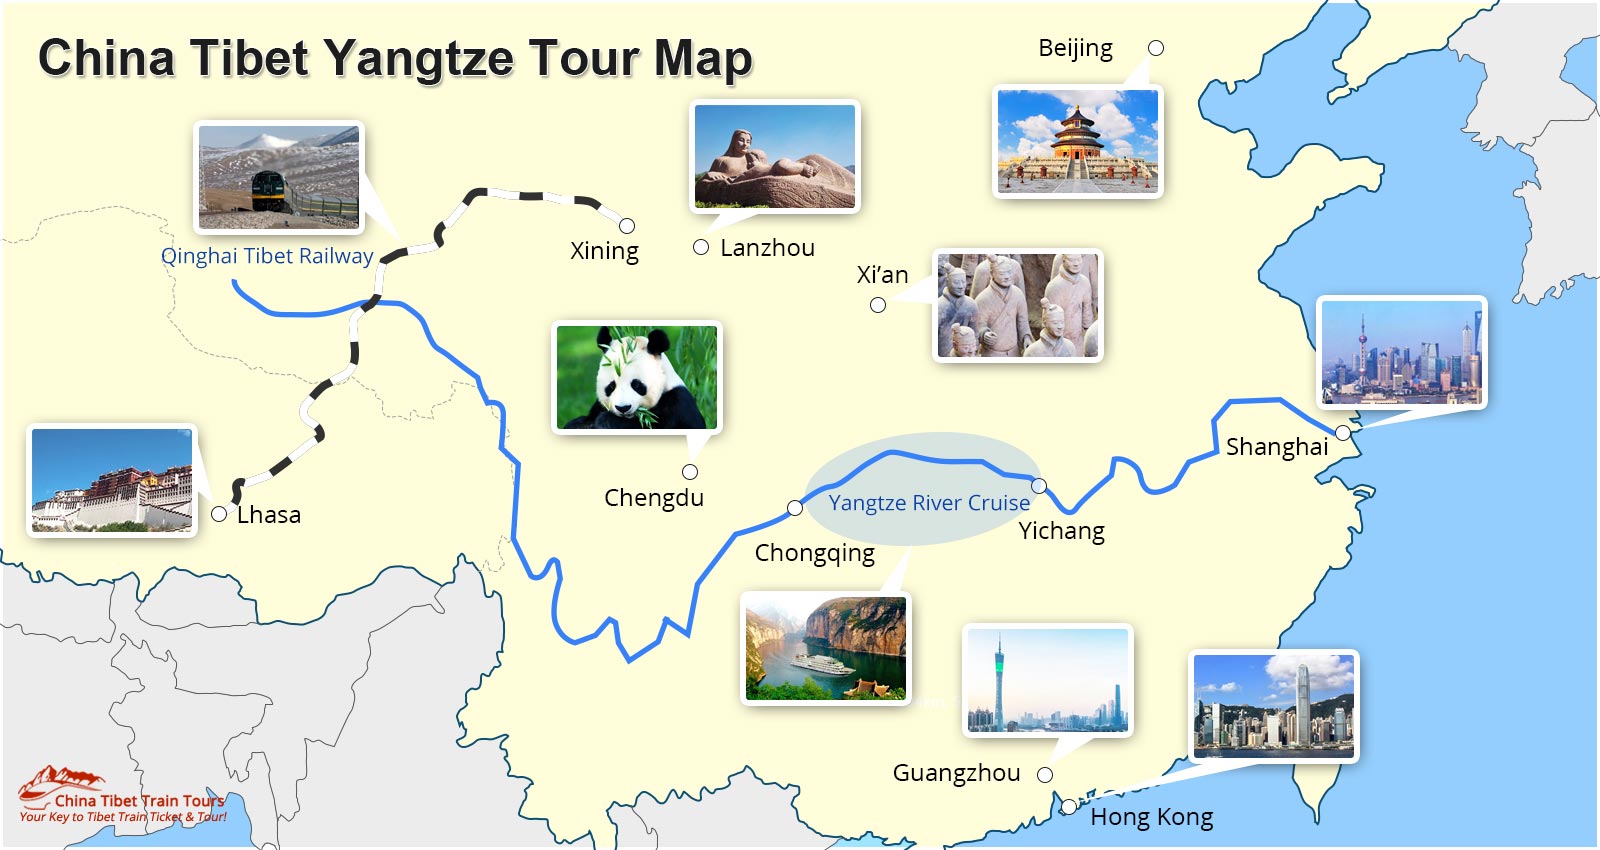 China Tibet Yangtze Tour Map